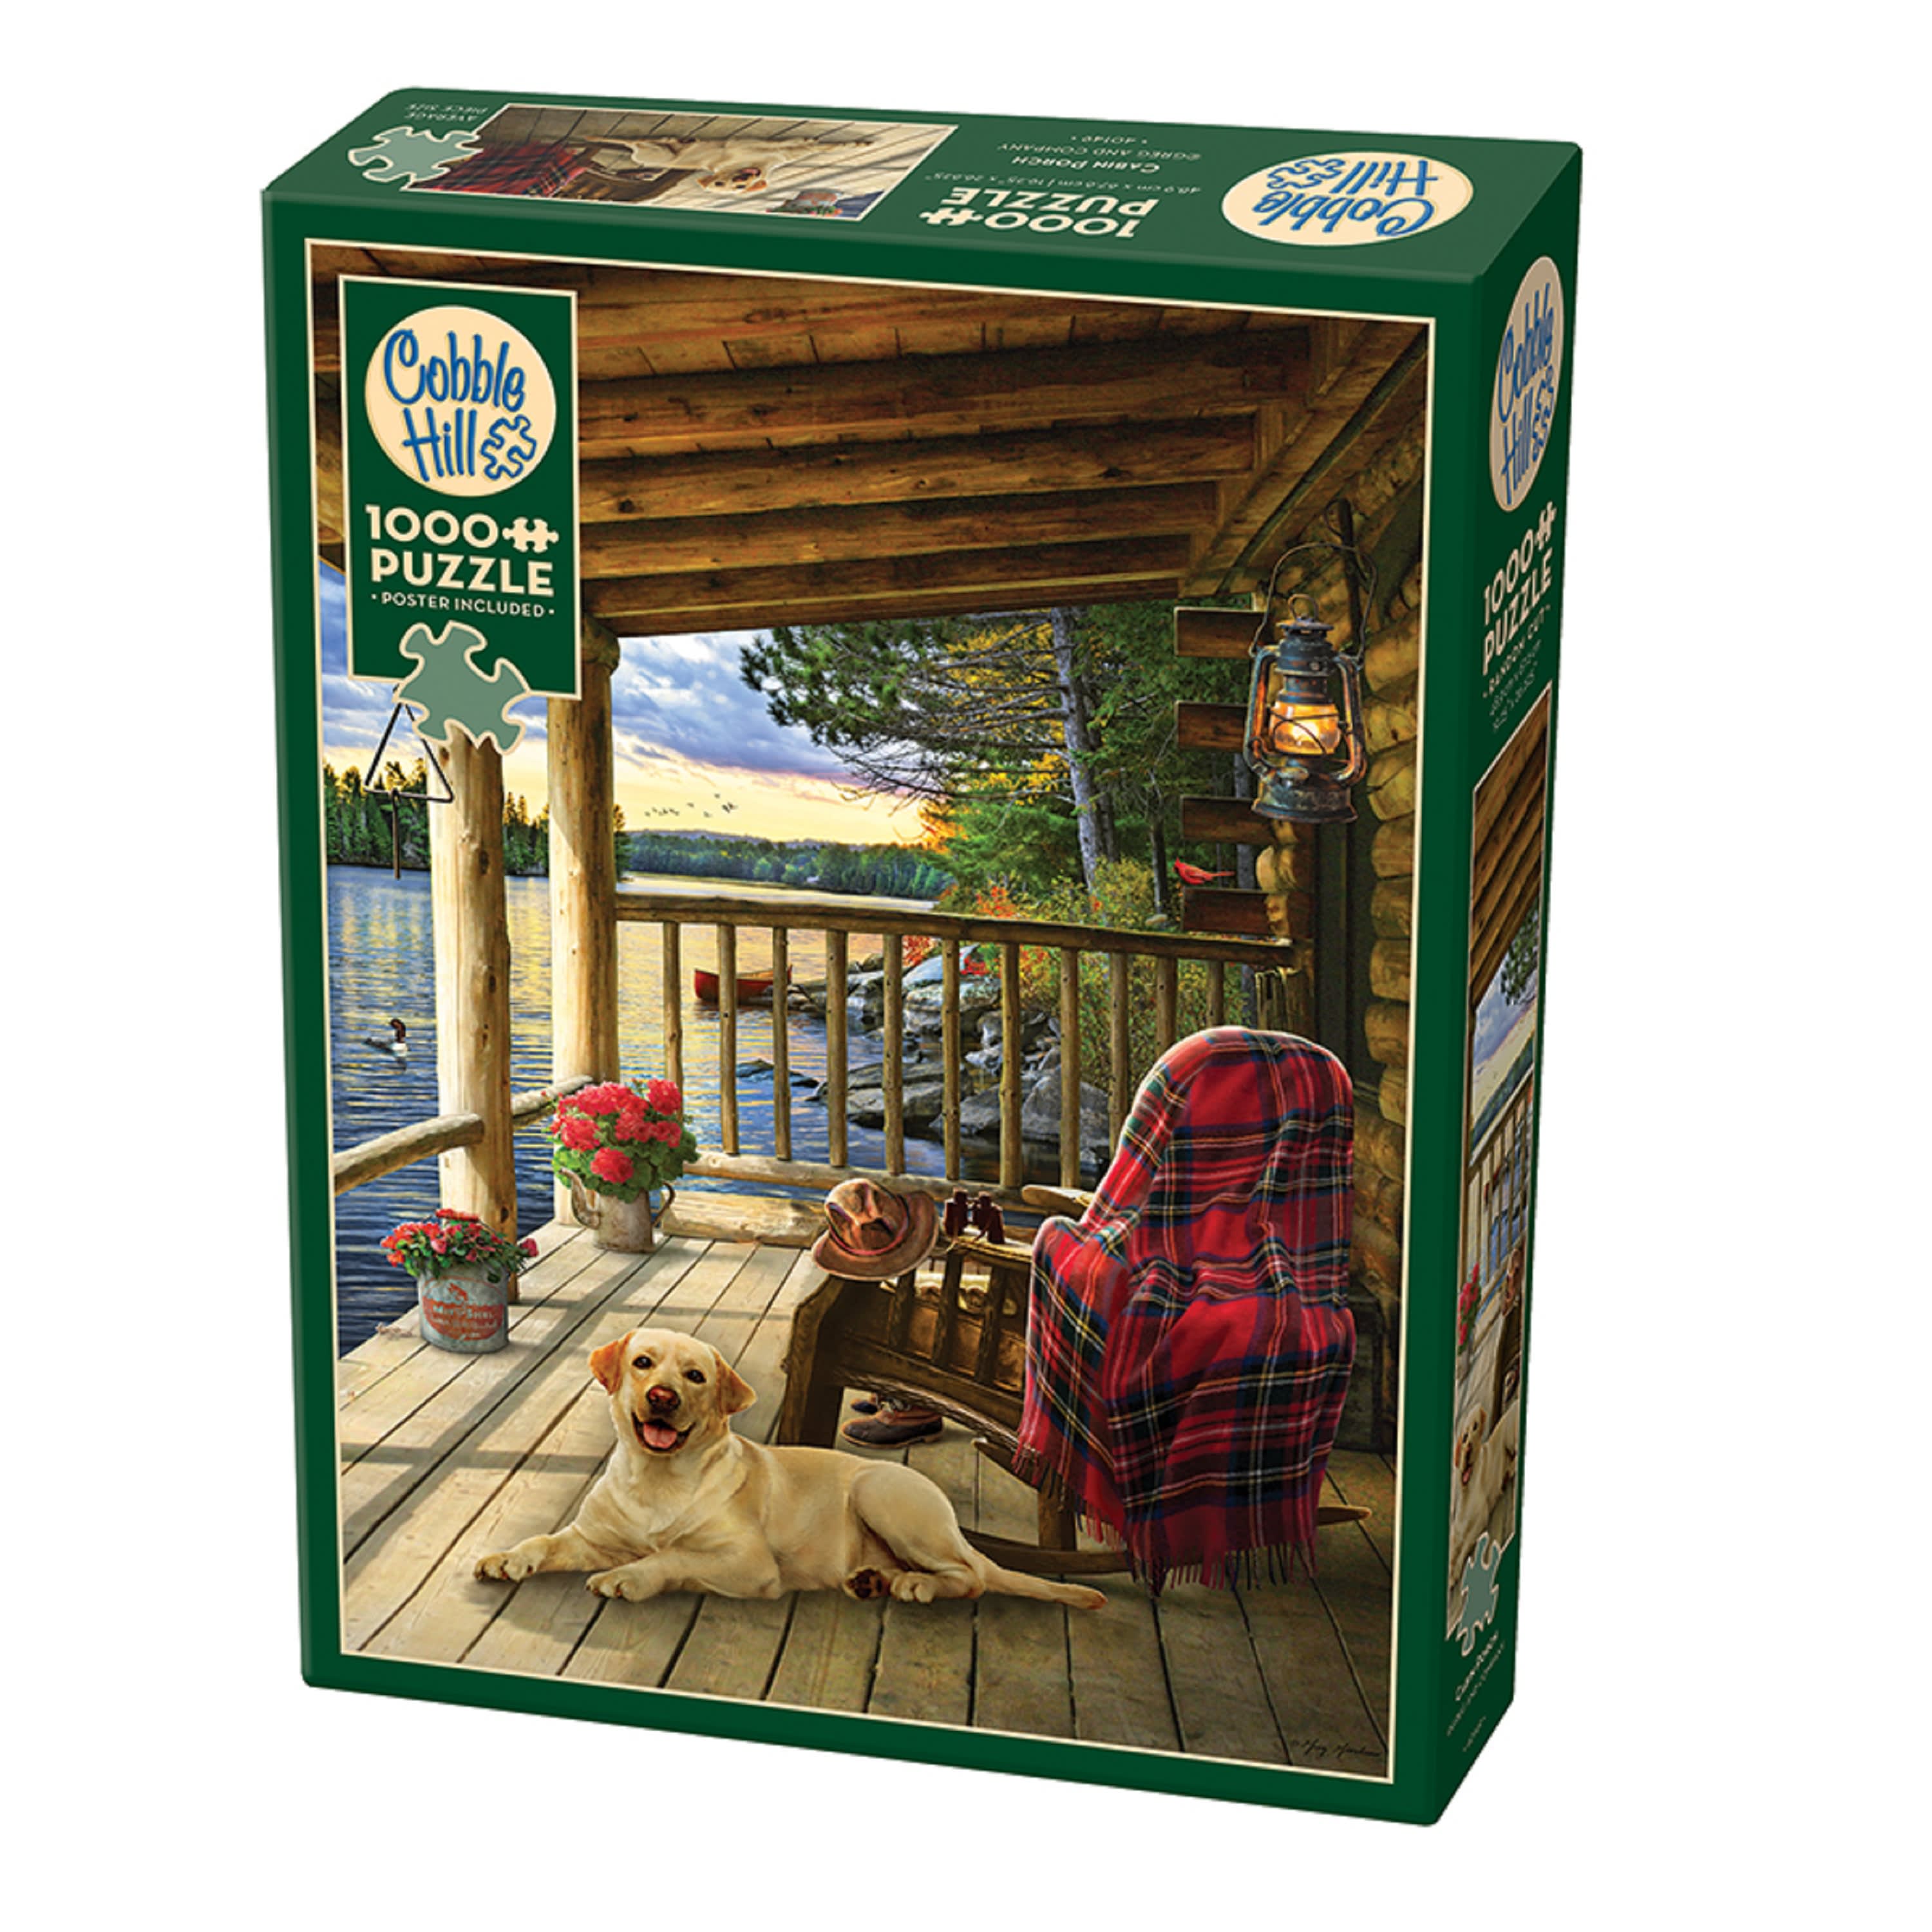 Cobble Hill Cabin Porch Puzzle - 1000 Pieces